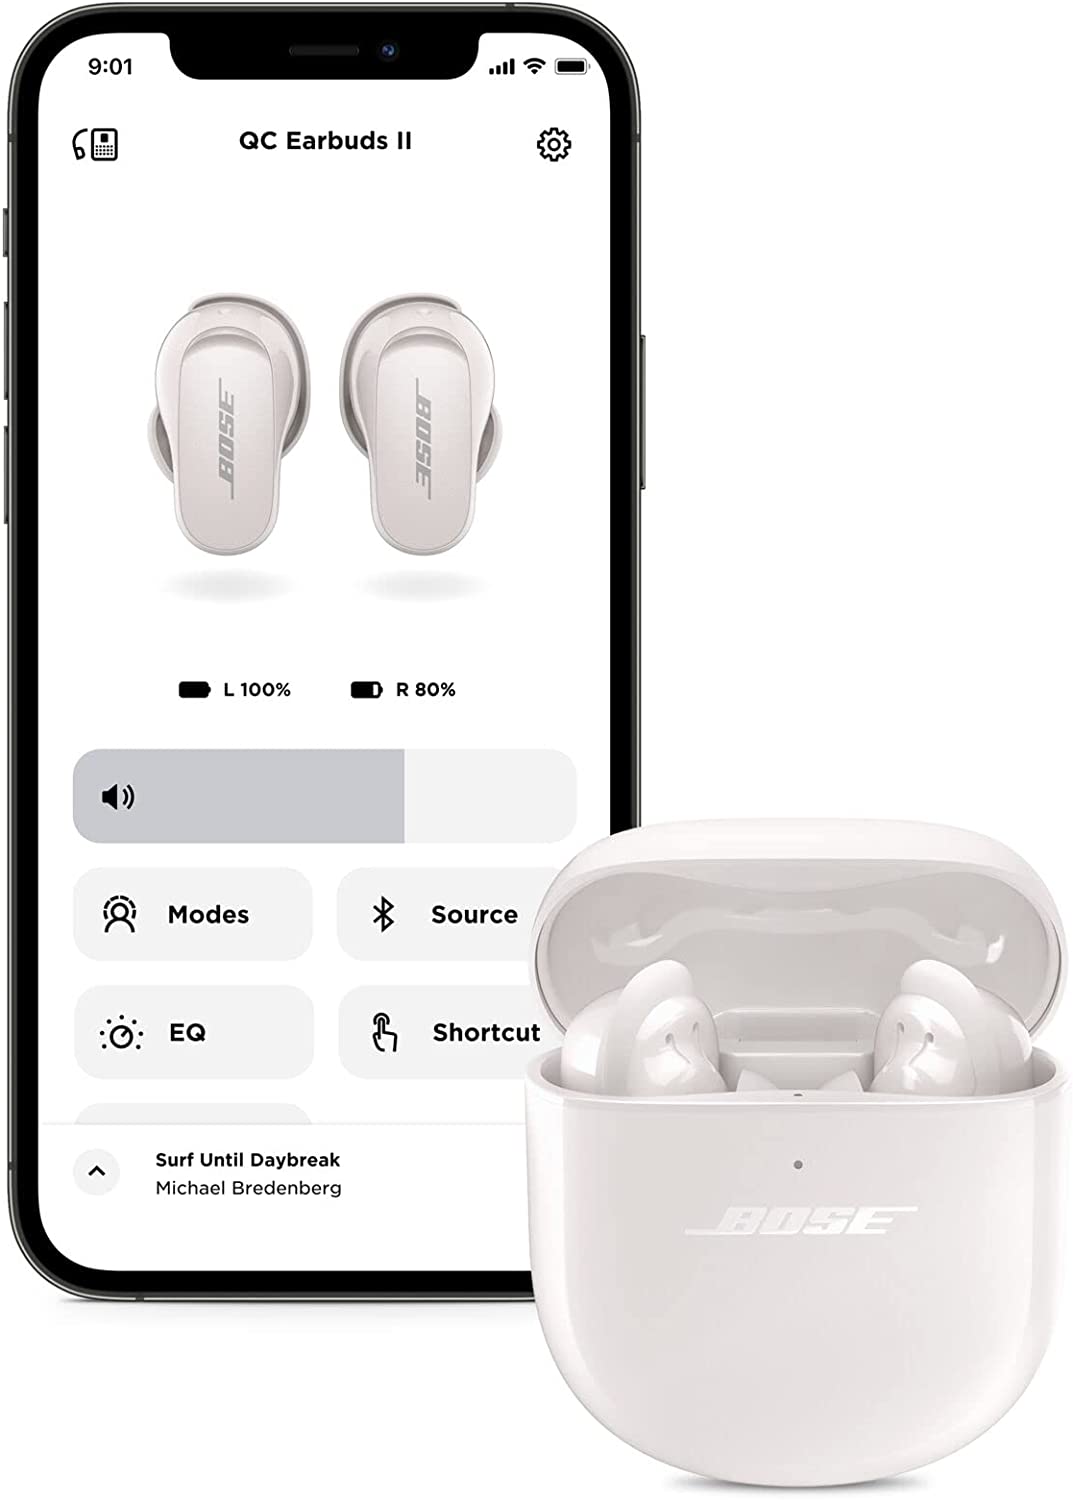 Buy Bose QuietComfort Earbuds - Black